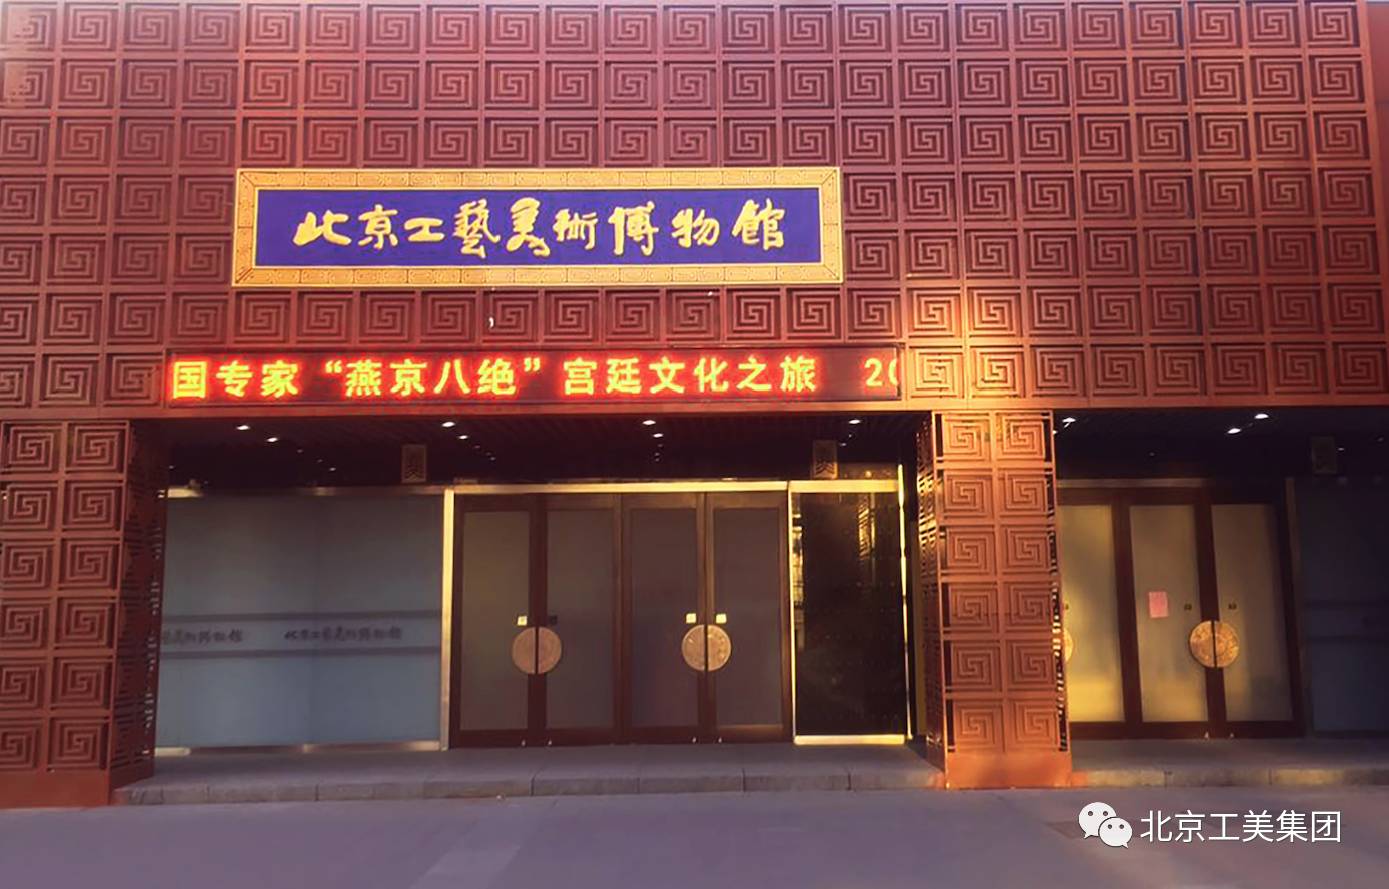 首都国企开放日 北京工艺美术博物馆 汇集数千珍品 等你来寻宝